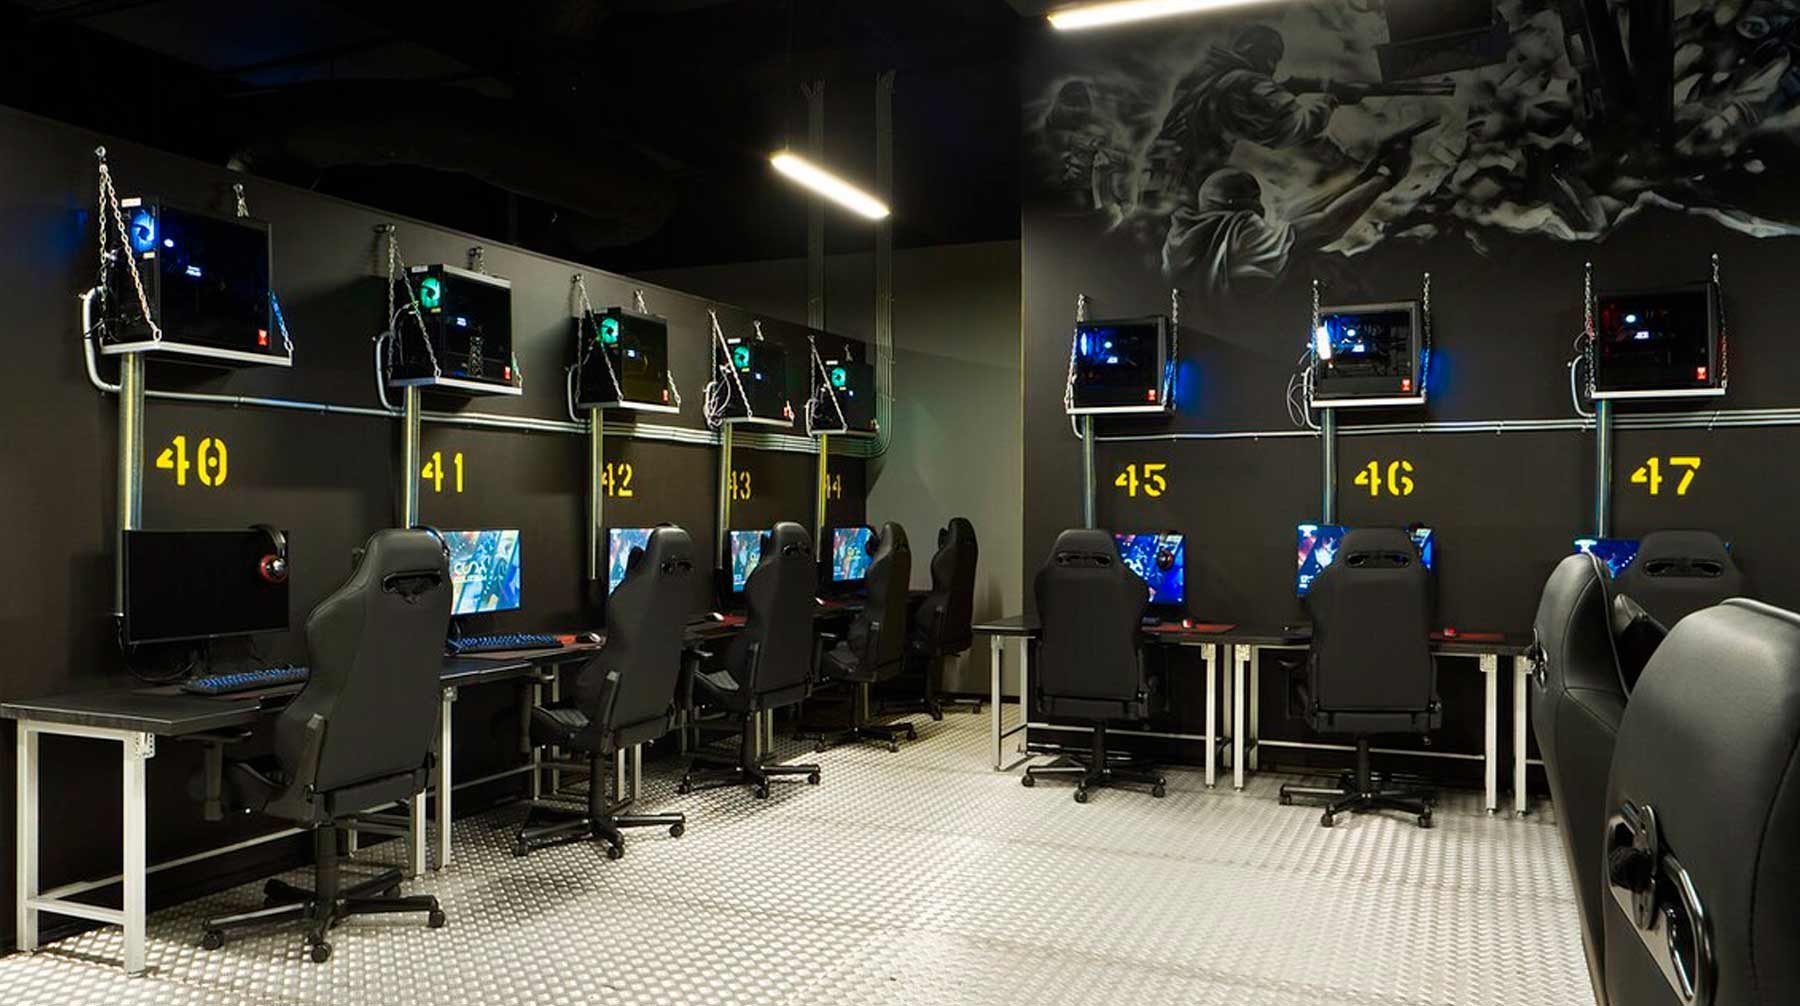 Франшиза компьютерной игры. Колизеум киберспорт Арена. Колизеум компьютерный клуб франшиза. Дизайн компьютерного клуба. Компьютерные залы.